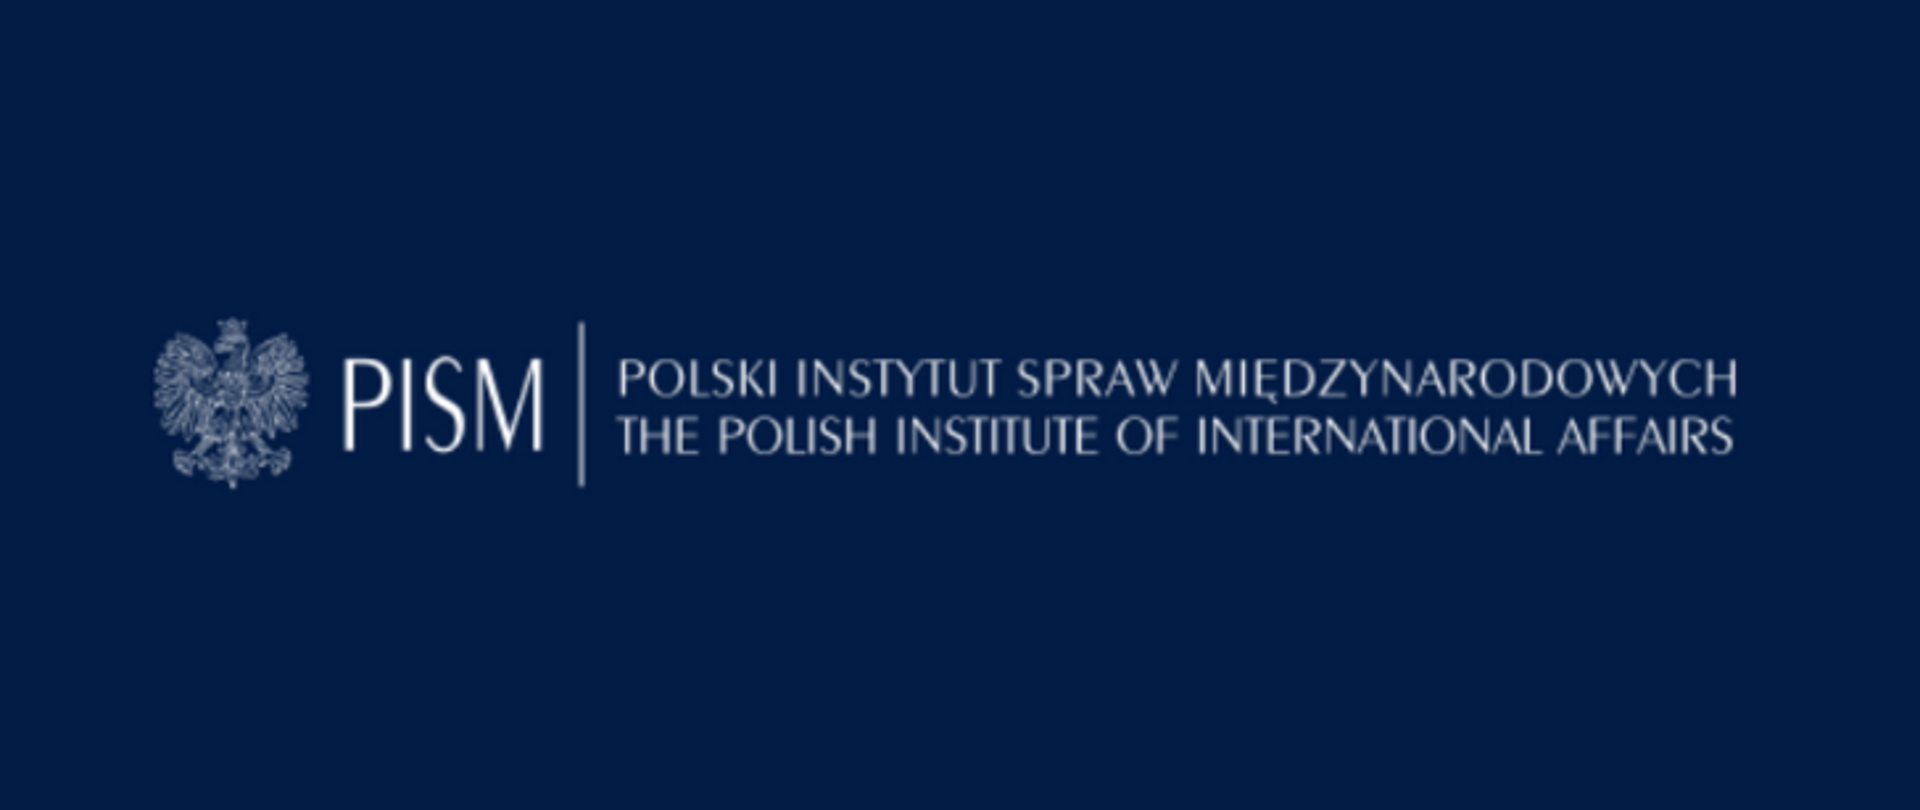 PISM - Polski Instytut Spraw Międzynarodowych
